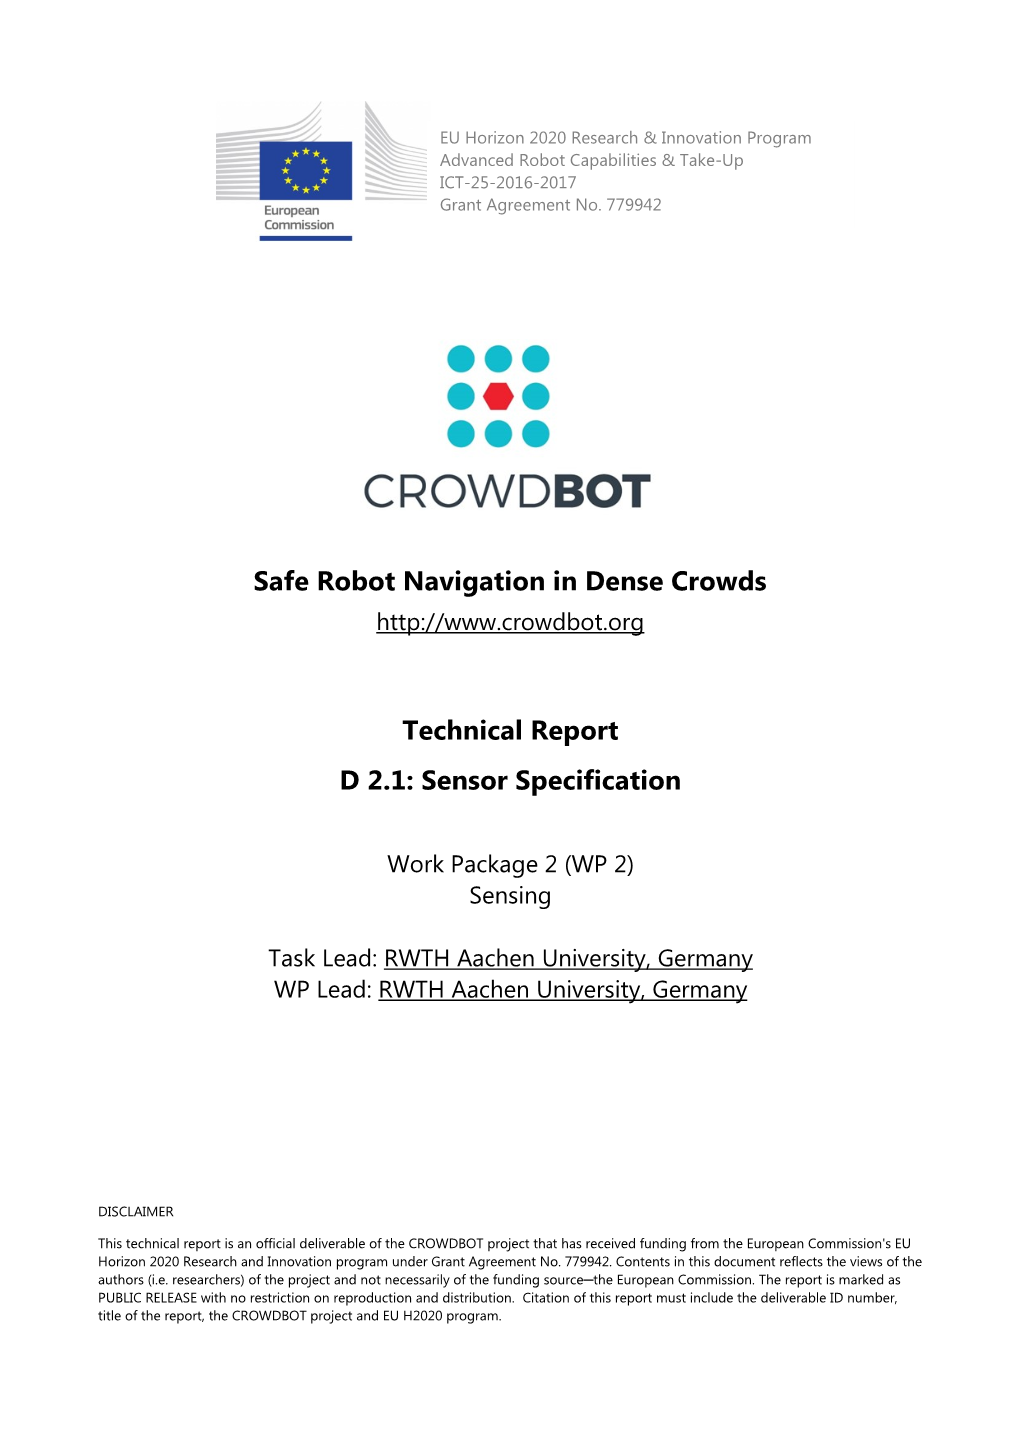 Safe Robot Navigation in Dense Crowds Technical Report D 2.1: Sensor Specification